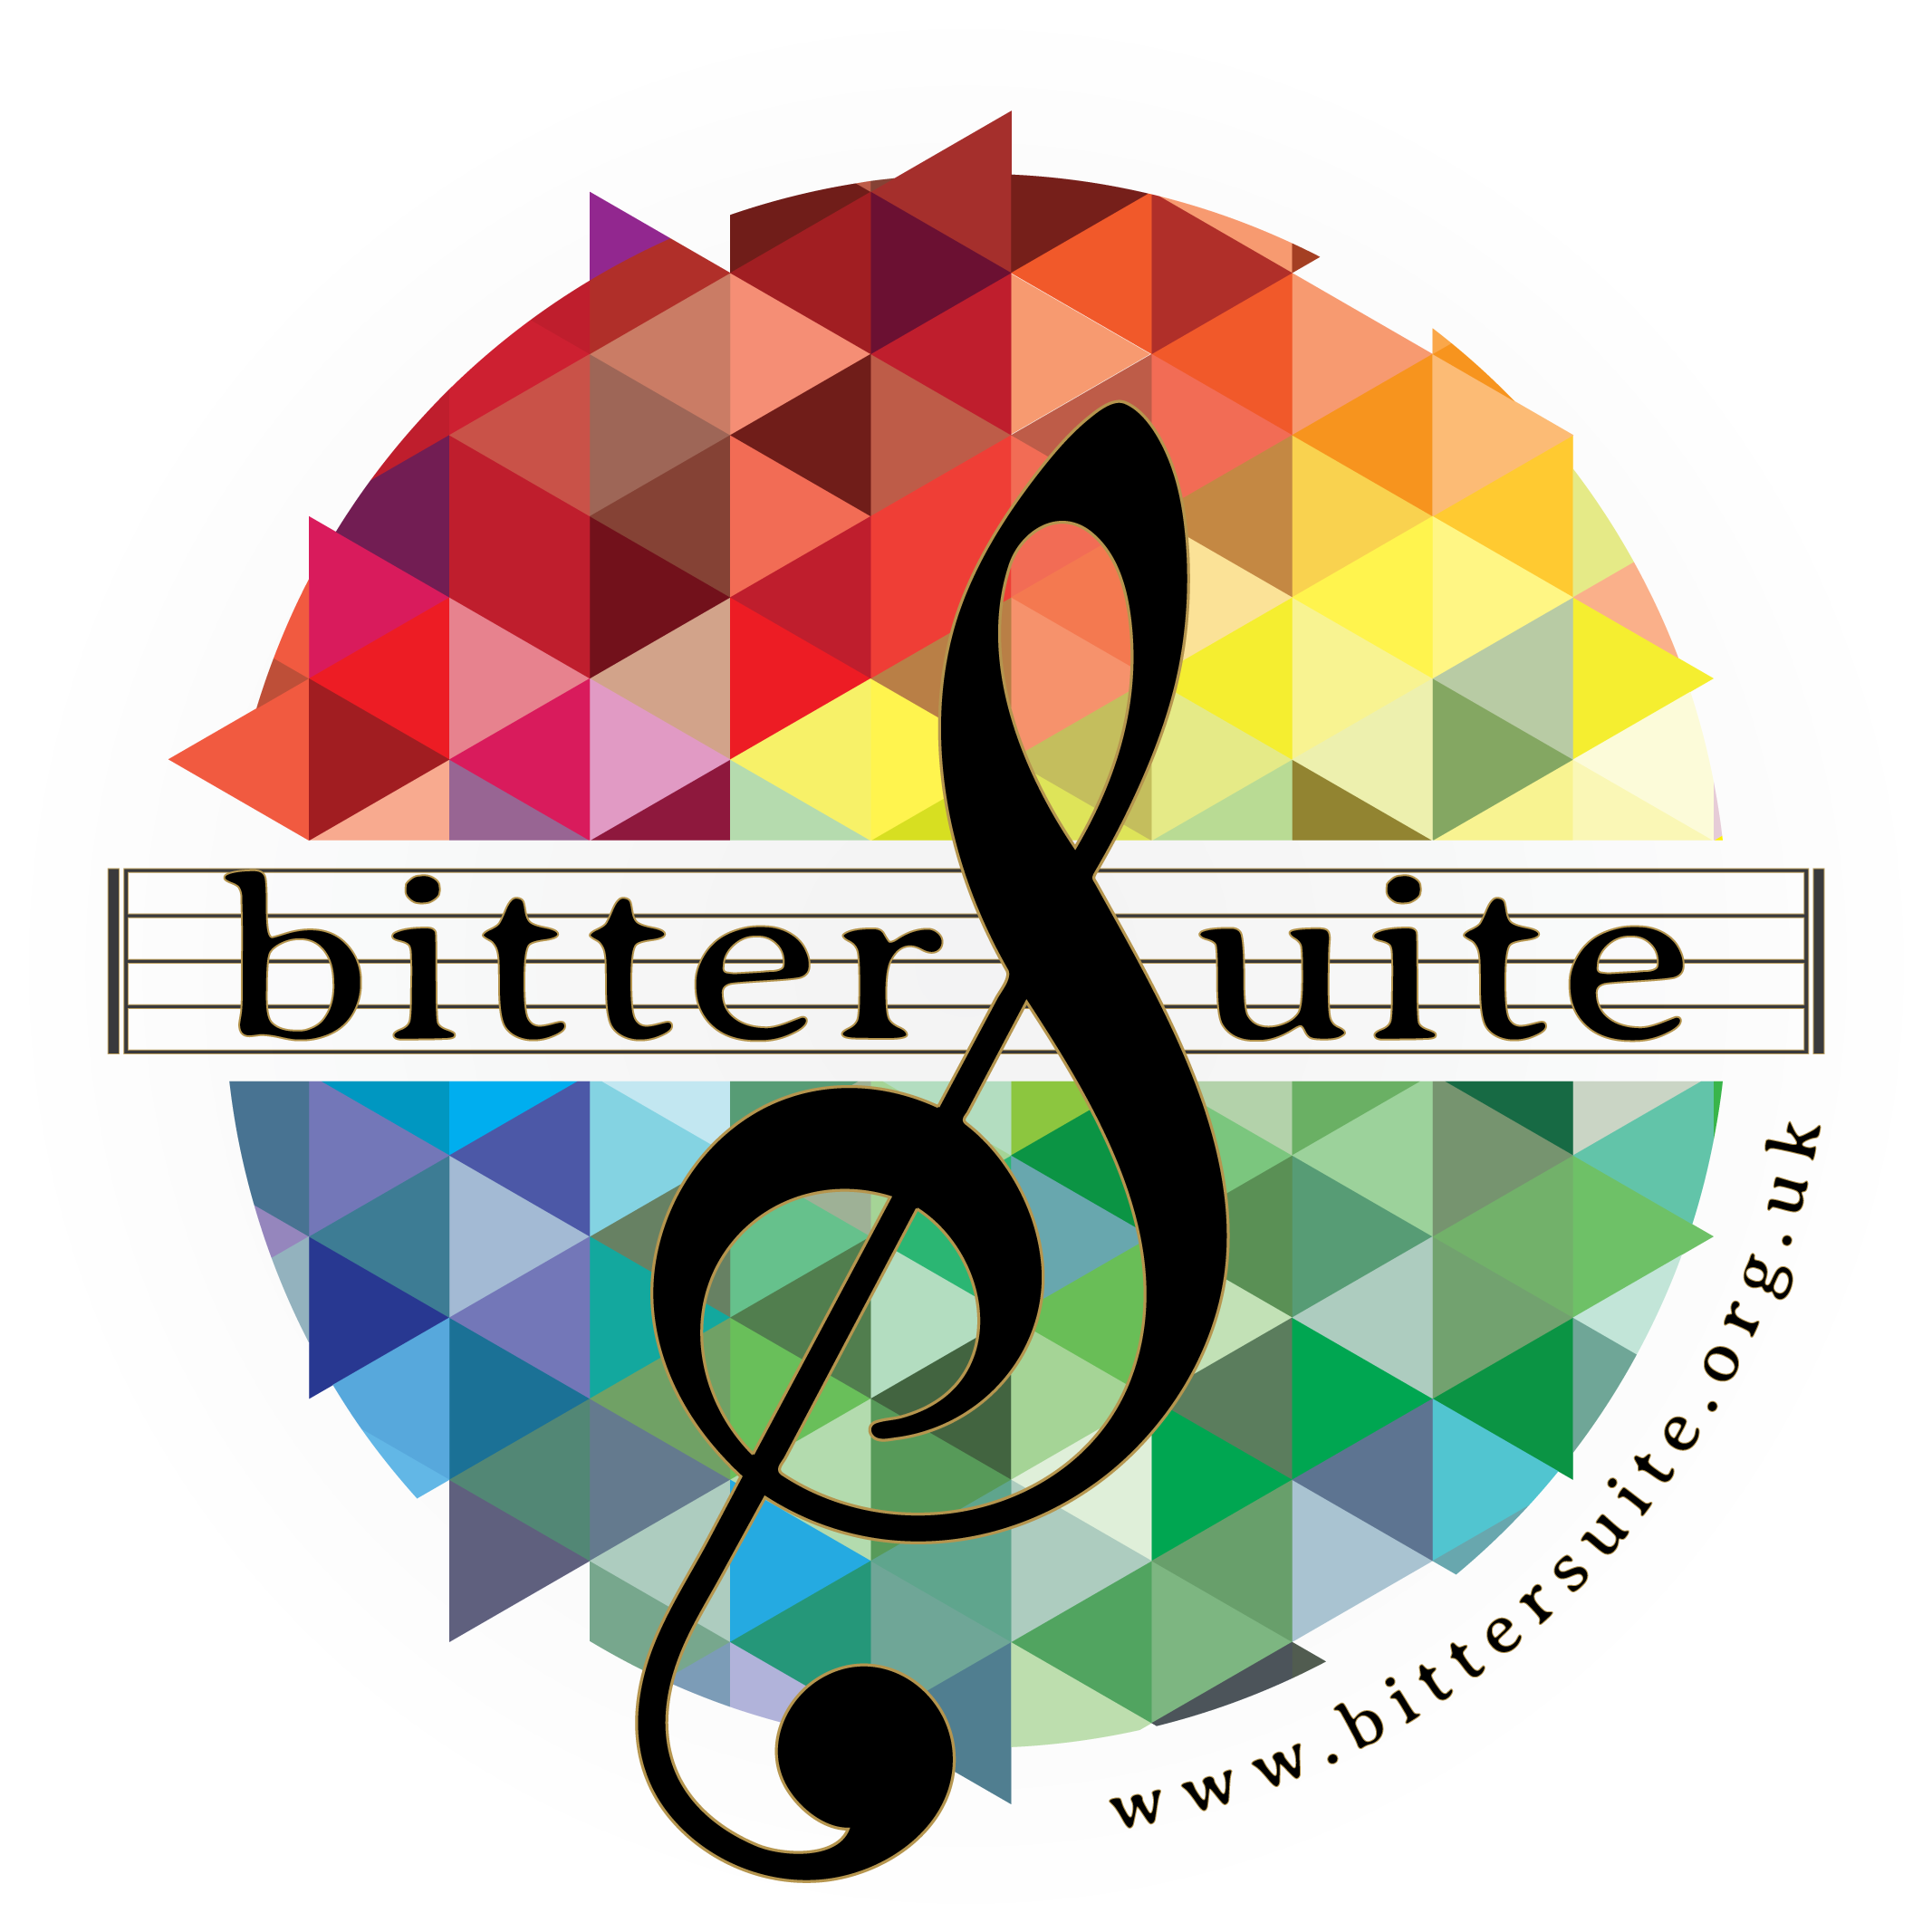 BitterSuite